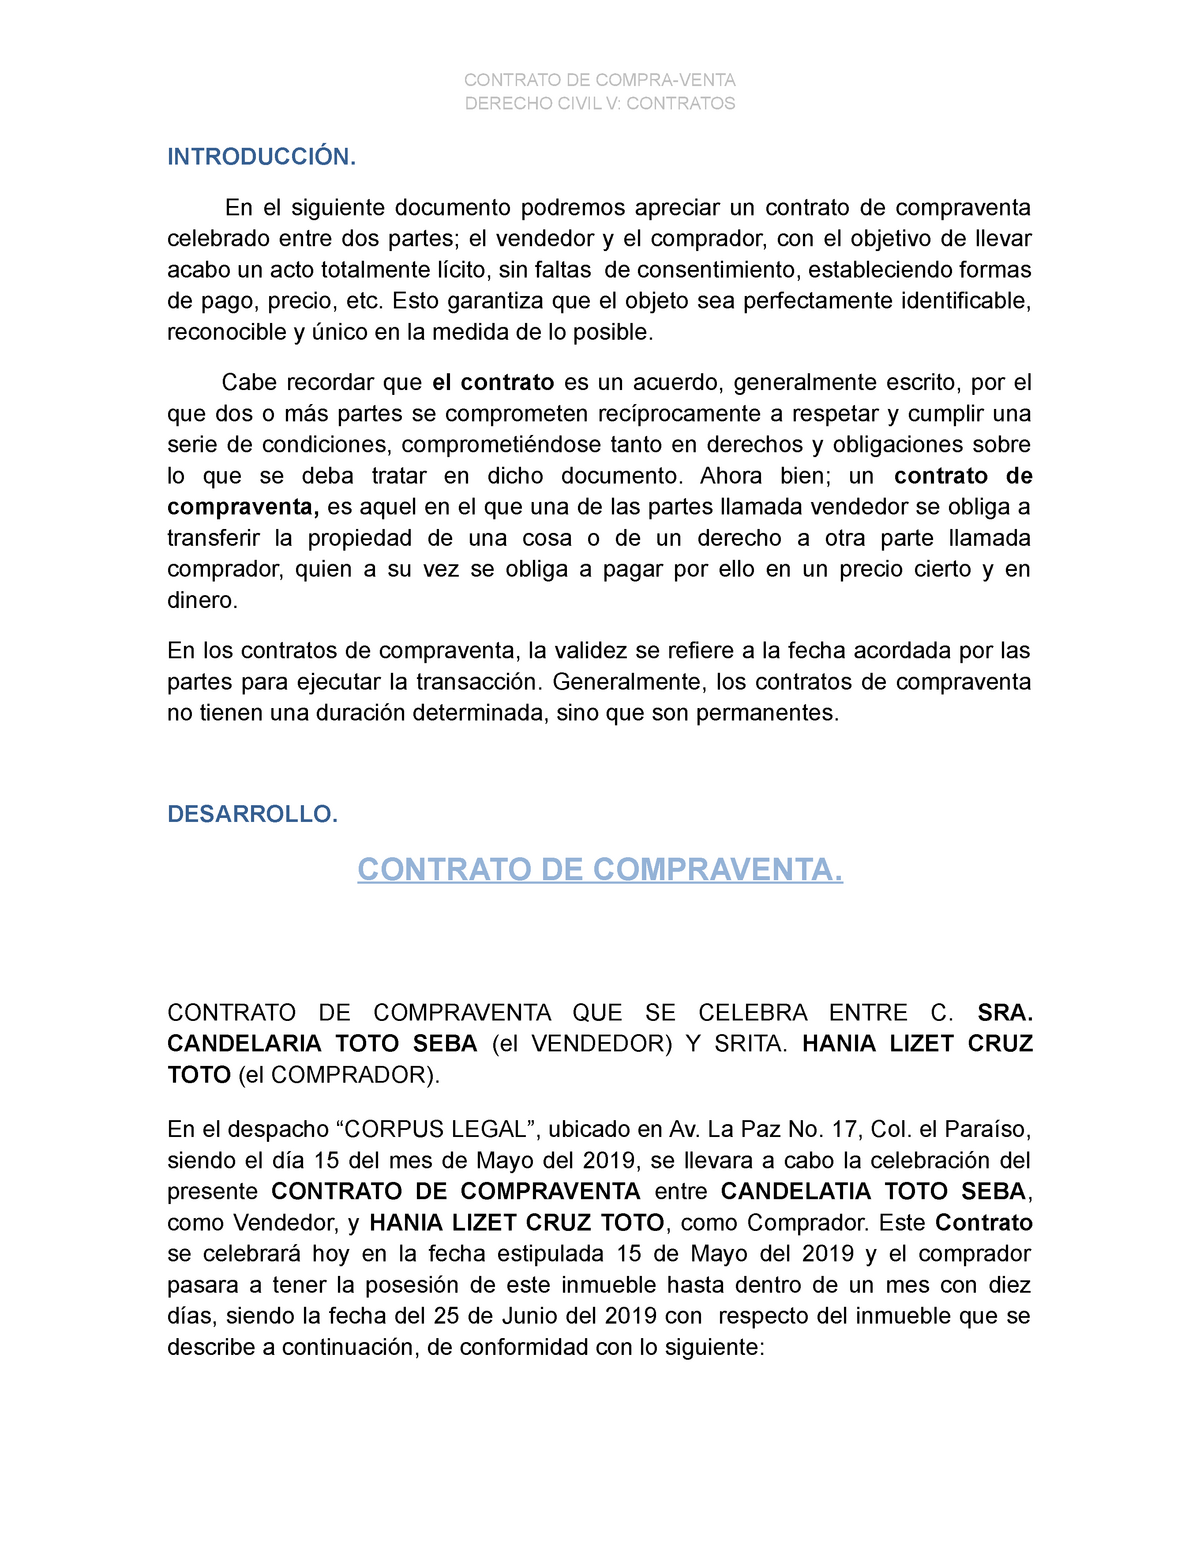 Civil V Contrato De Compraventa Derecho Civil V Contratos IntroducciÓn En El Siguiente 9935